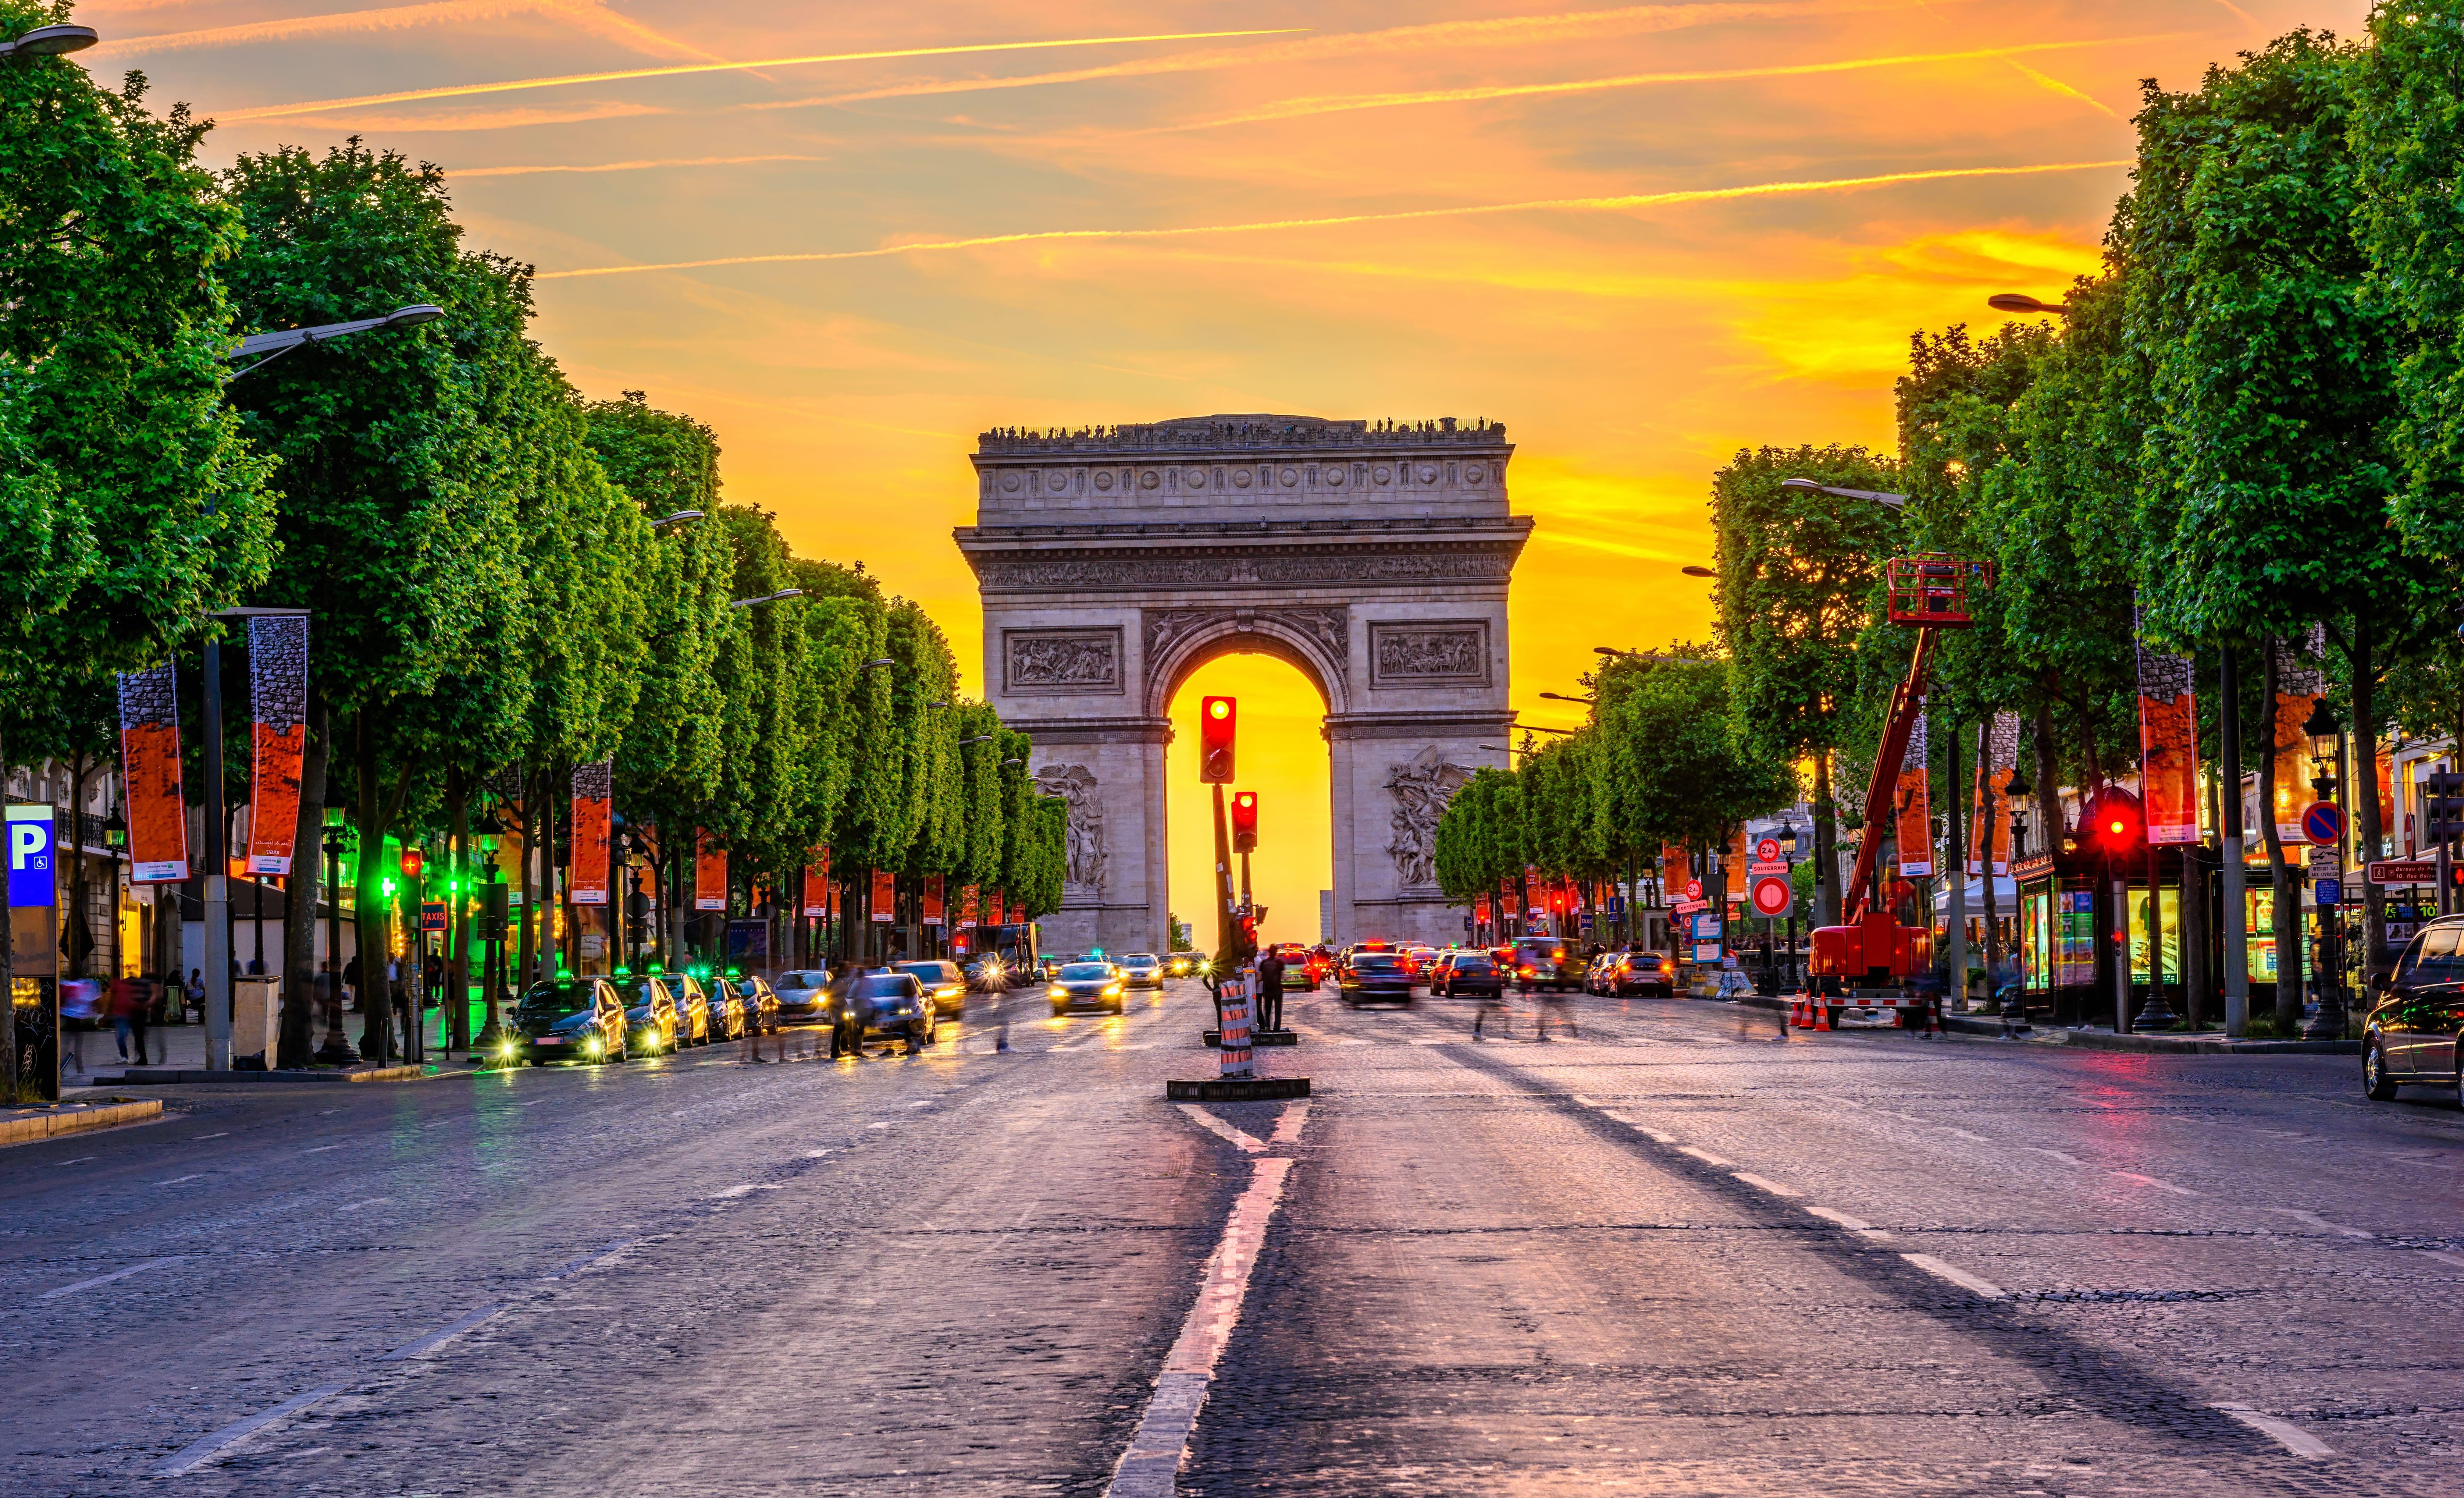 Paris Arc de Triomphe at Sunset